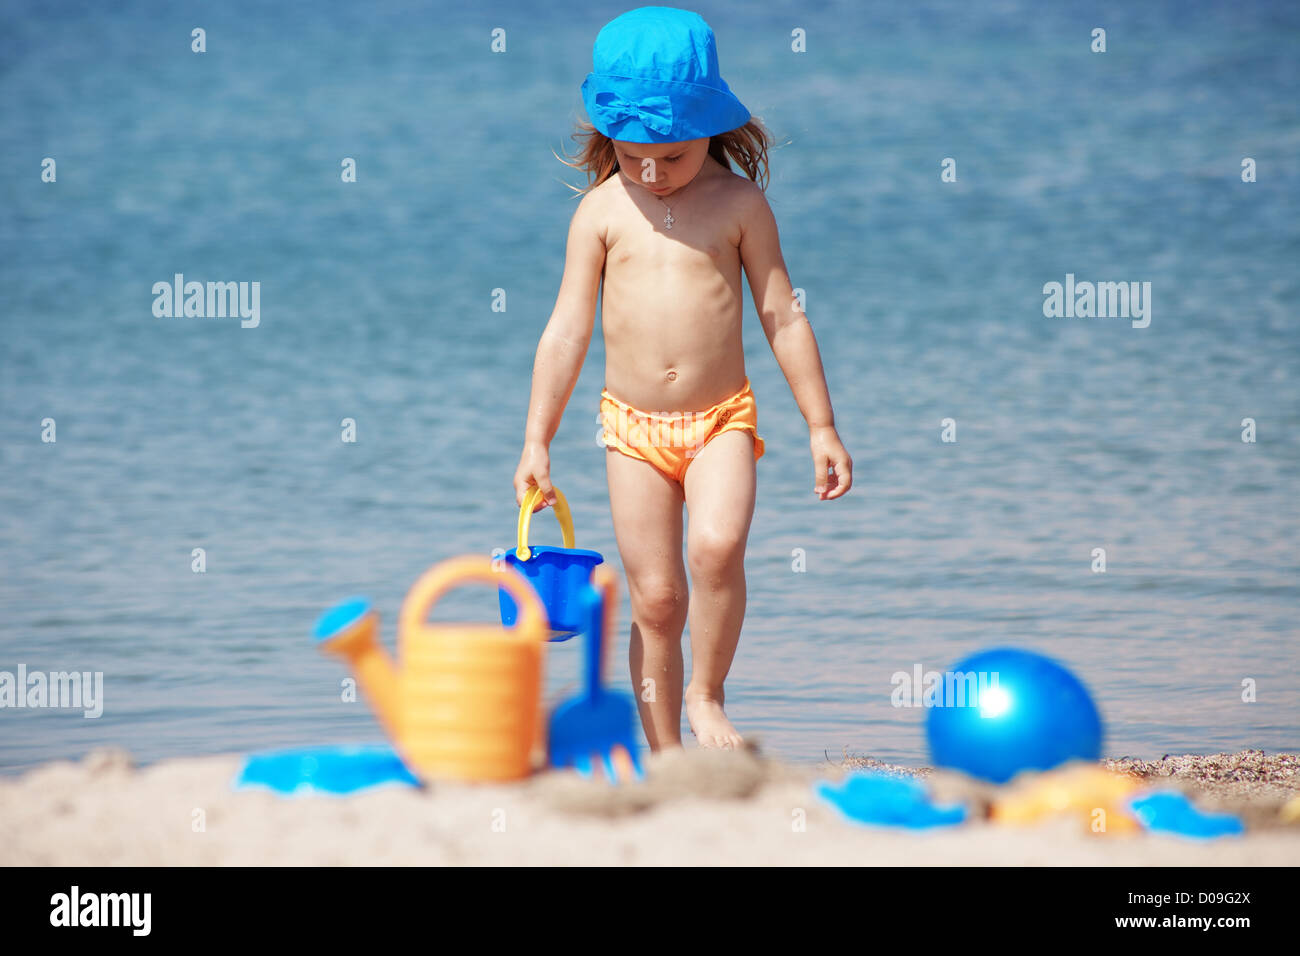 за голыми детьми на пляже фото 10